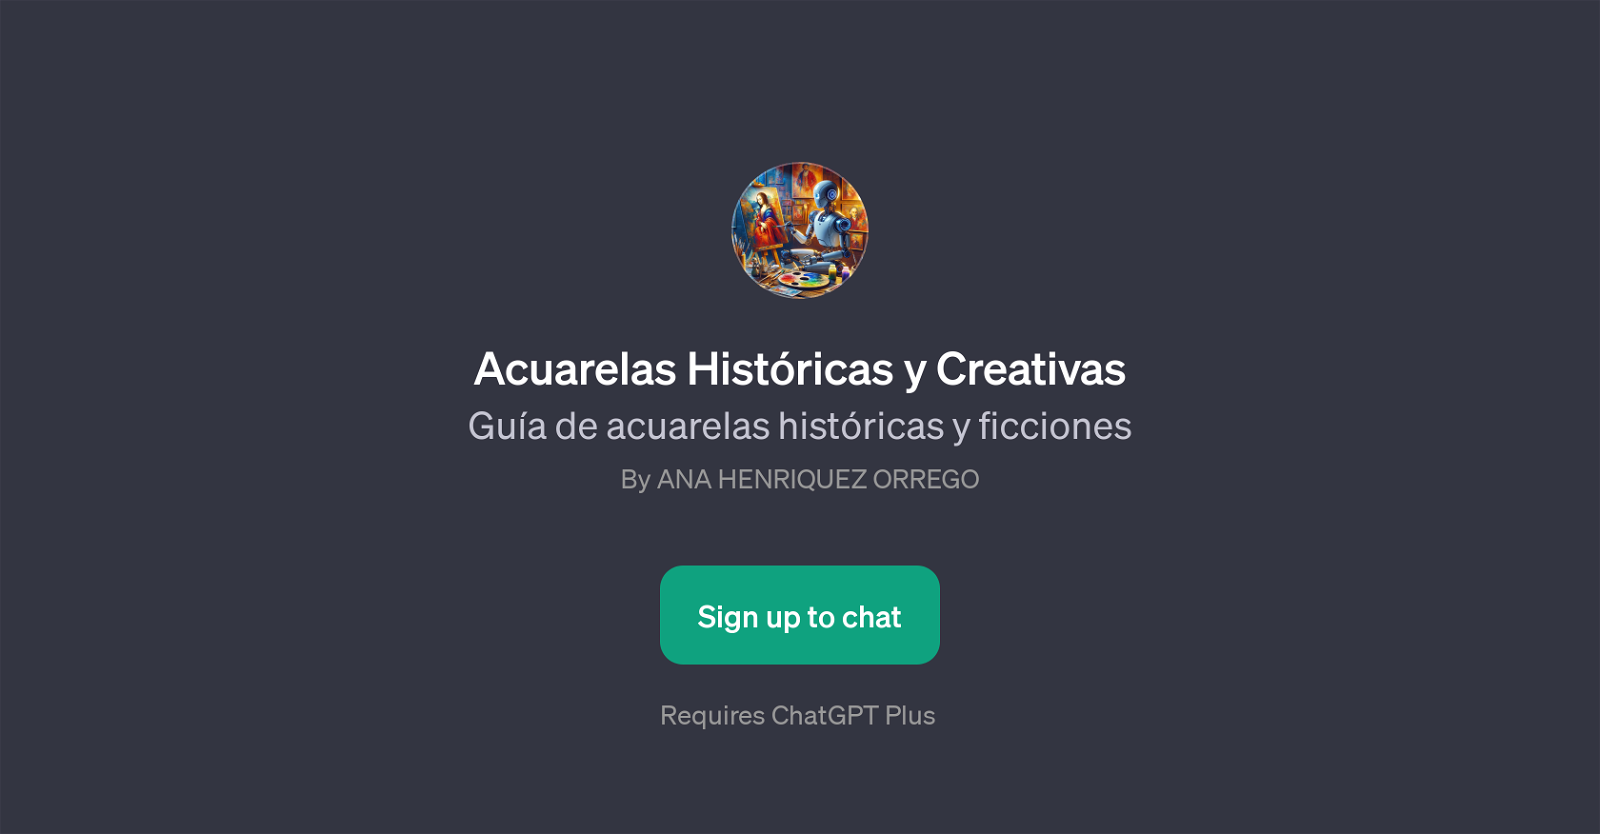 Acuarelas Histricas y Creativas website